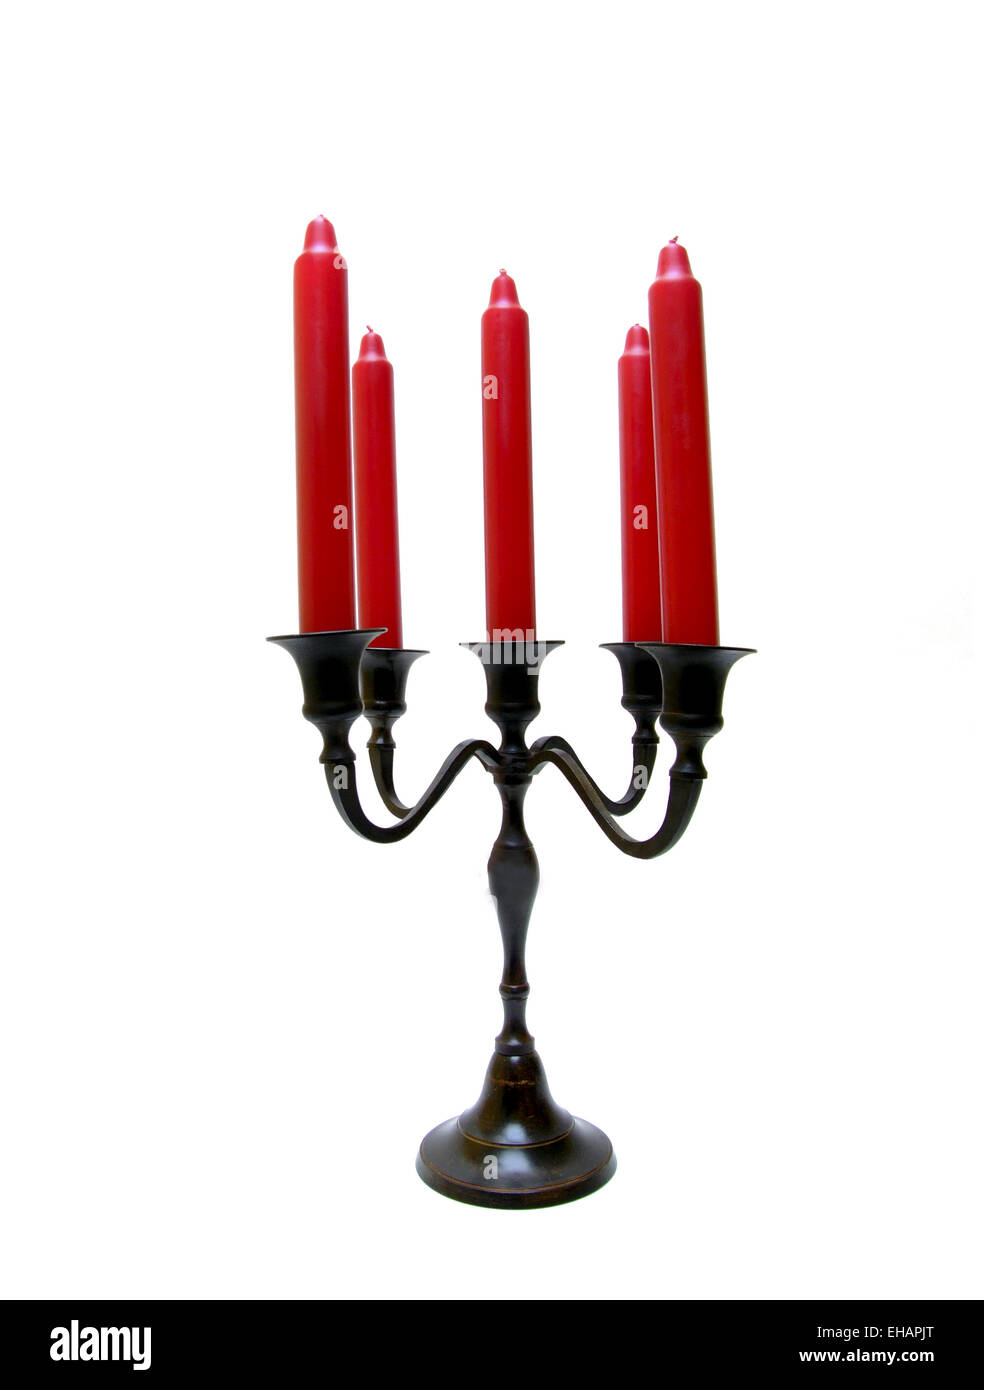 Kerzen und Halter / red candles Stock Photo